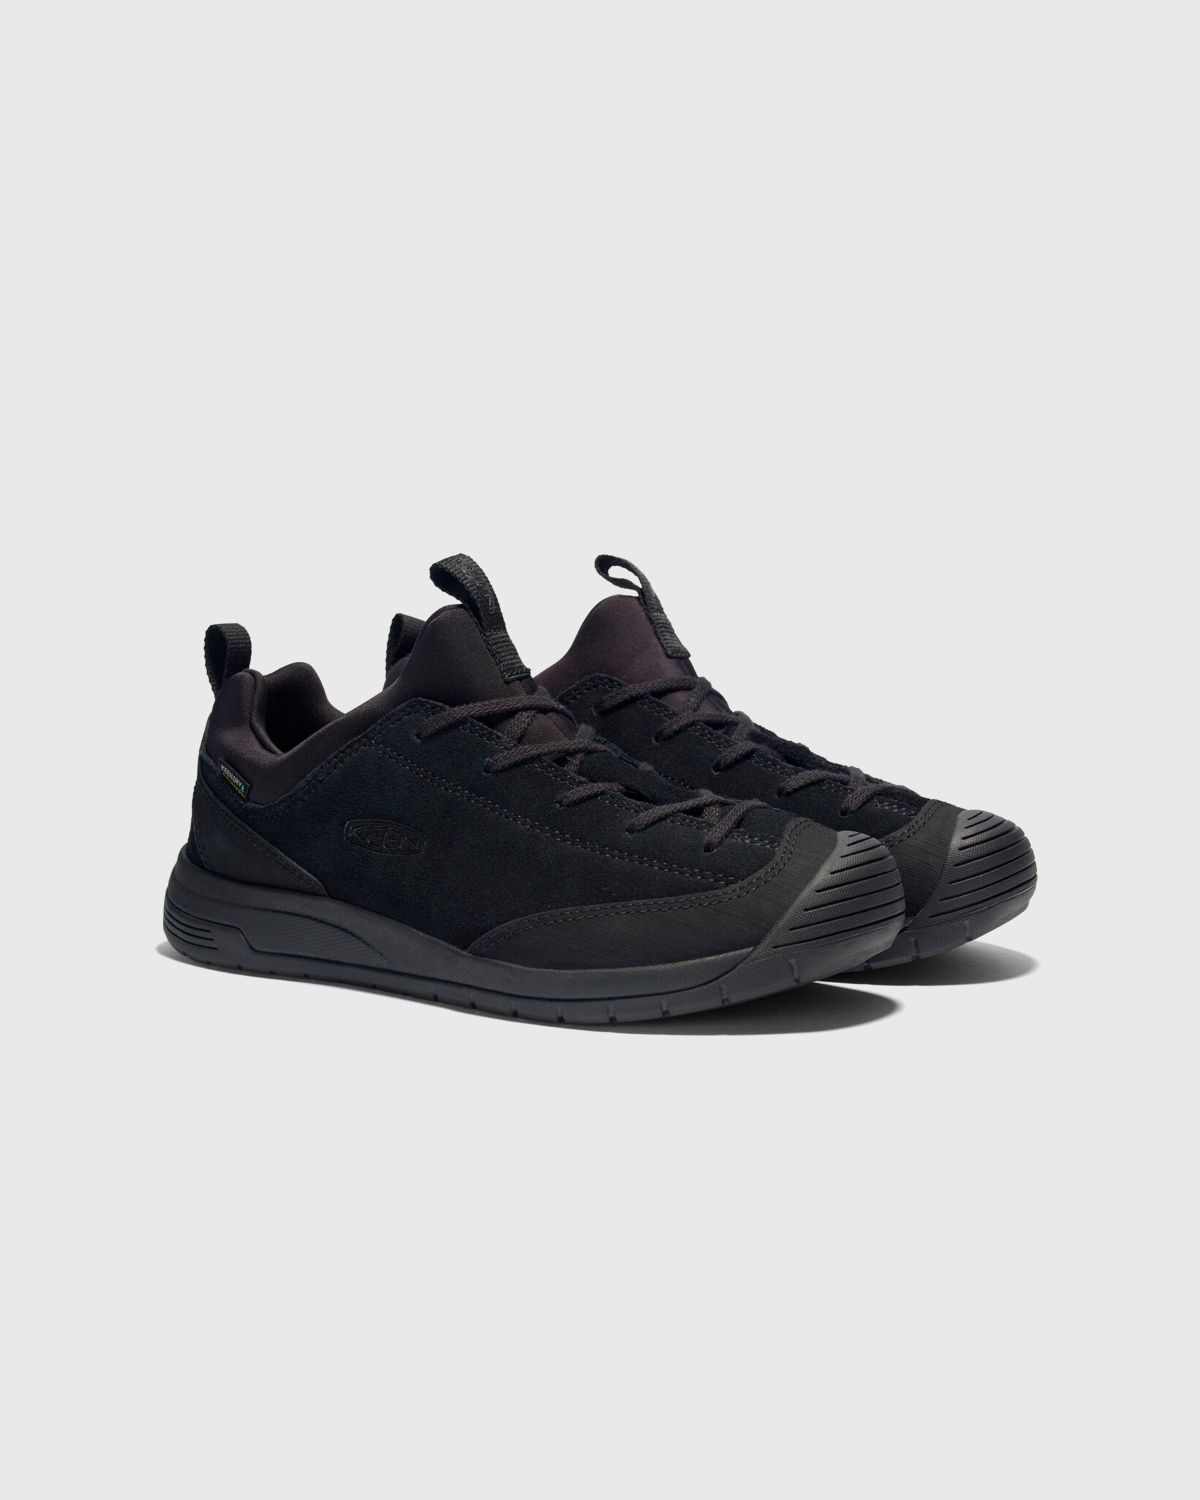 Keen x Engineered Garments – JASPER II EG MOC WP Black - Low Top Sneakers - Black - Image 5